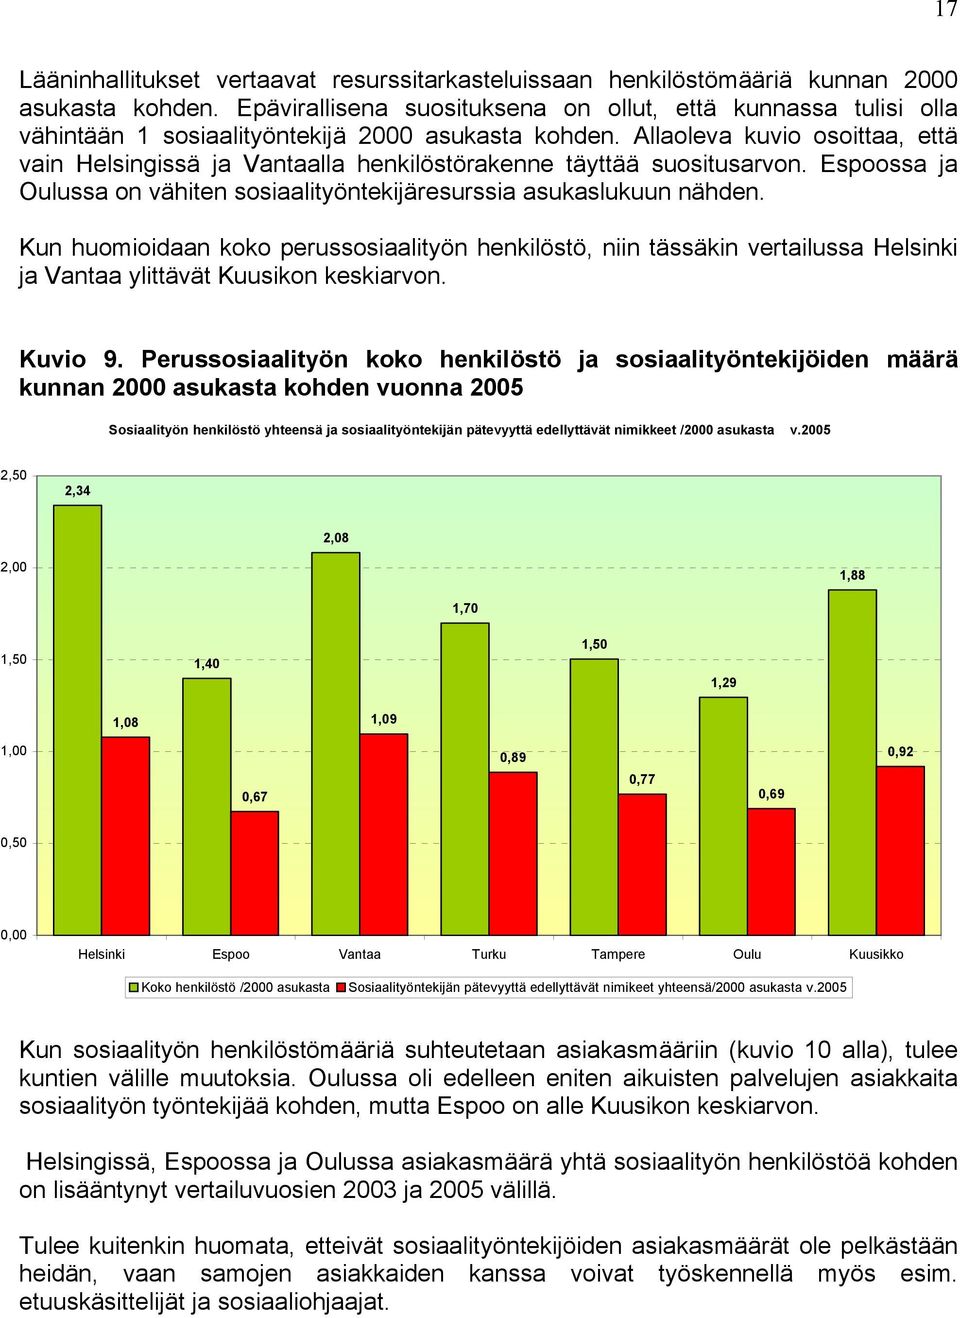 Allaoleva kuvio osoittaa, että vain Helsingissä ja Vantaalla henkilöstörakenne täyttää suositusarvon. Espoossa ja Oulussa on vähiten sosiaalityöntekijäresurssia asukaslukuun nähden.